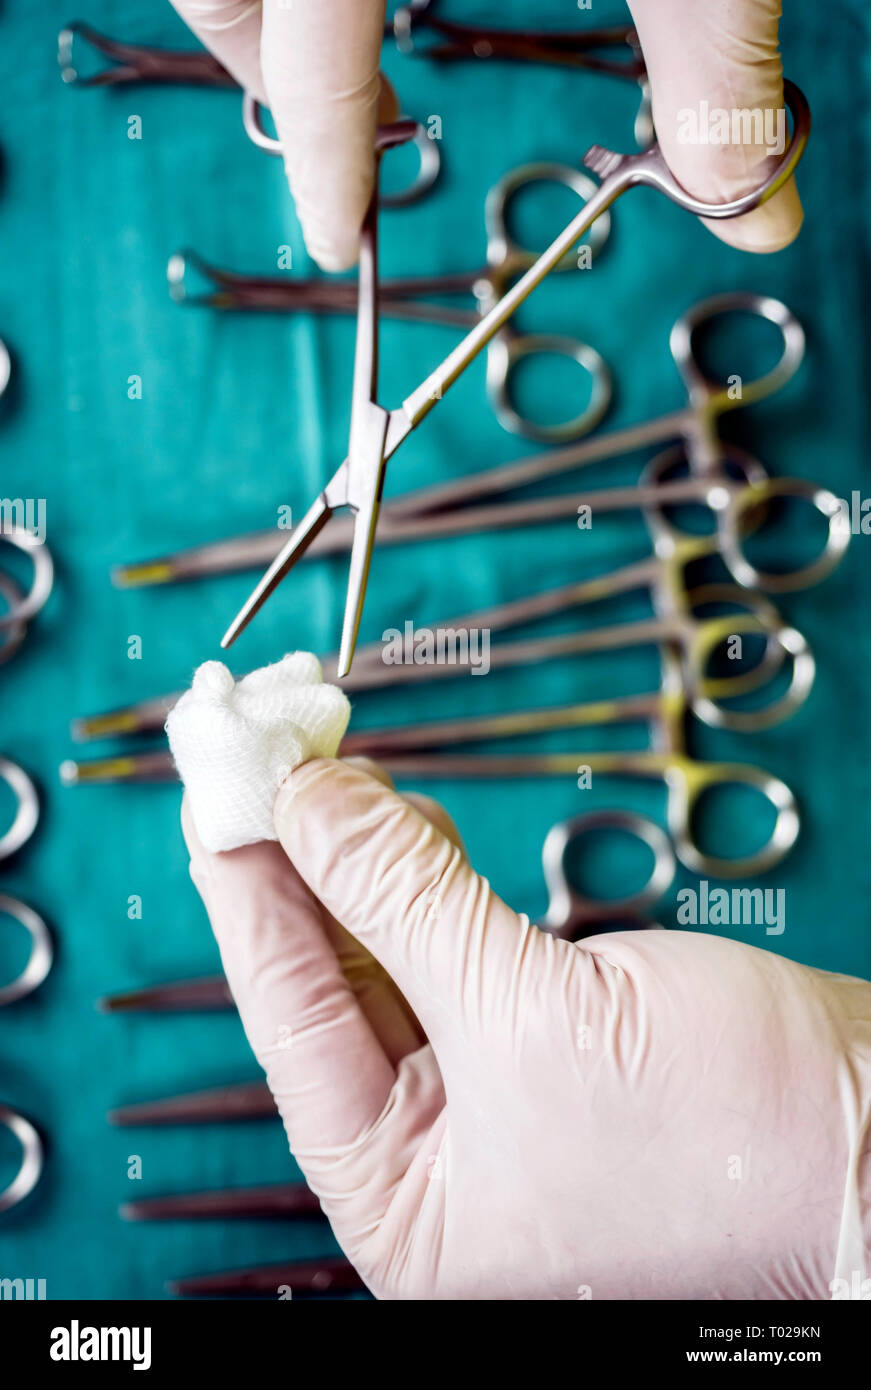 Chirurg im Operationssaal arbeiten, die Hände mit Handschuhen holding Schere mit torunda, konzeptionelle Bild, vertikale Zusammensetzung Stockfoto